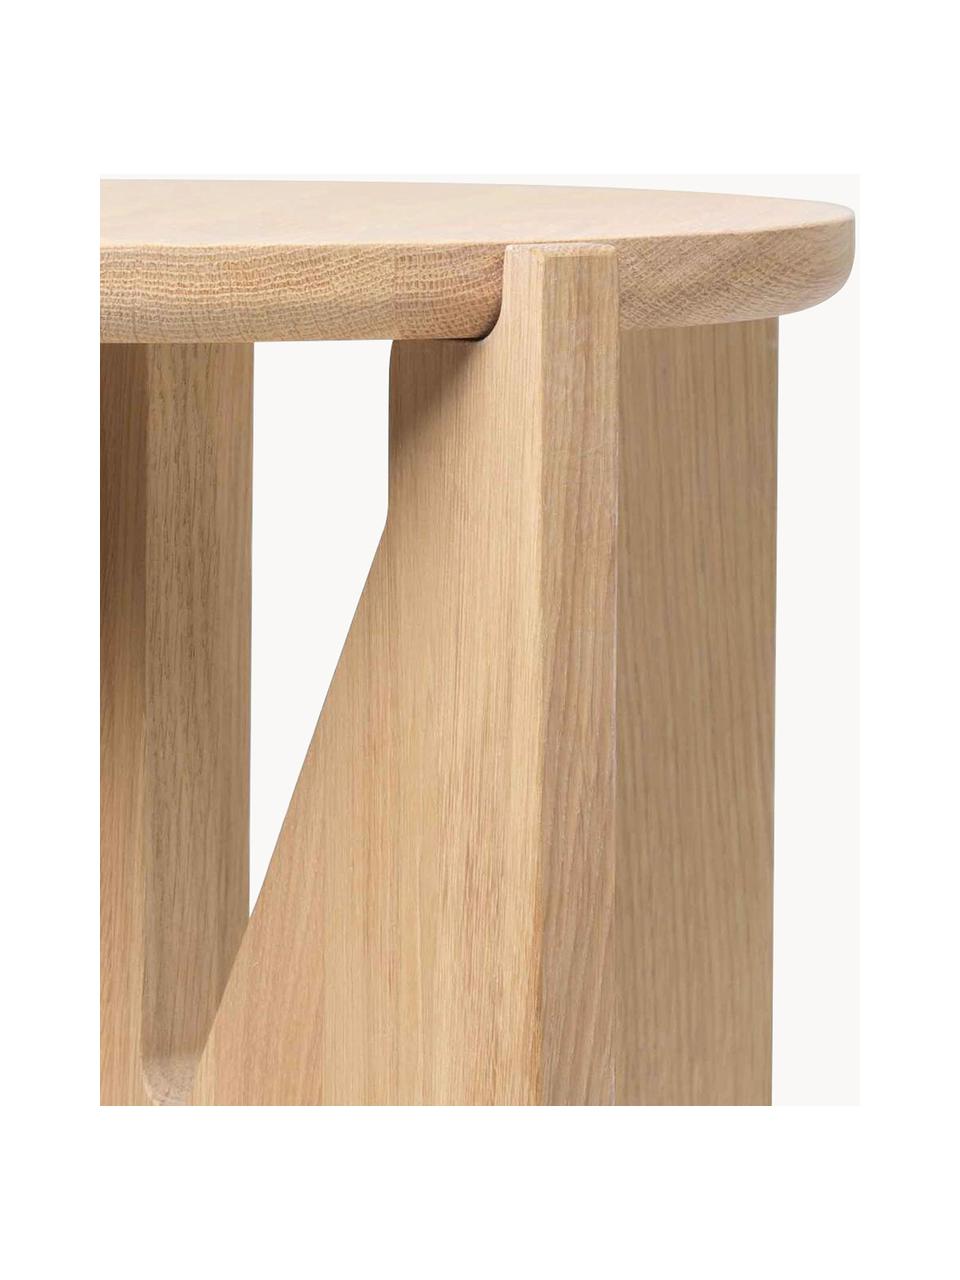 Beistelltisch Future aus Eichenholz, Massives Eichenholz

Dieses Produkt wird aus nachhaltig gewonnenem, FSC®-zertifiziertem Holz gefertigt., Eichenholz, Ø 36 x H 42 cm